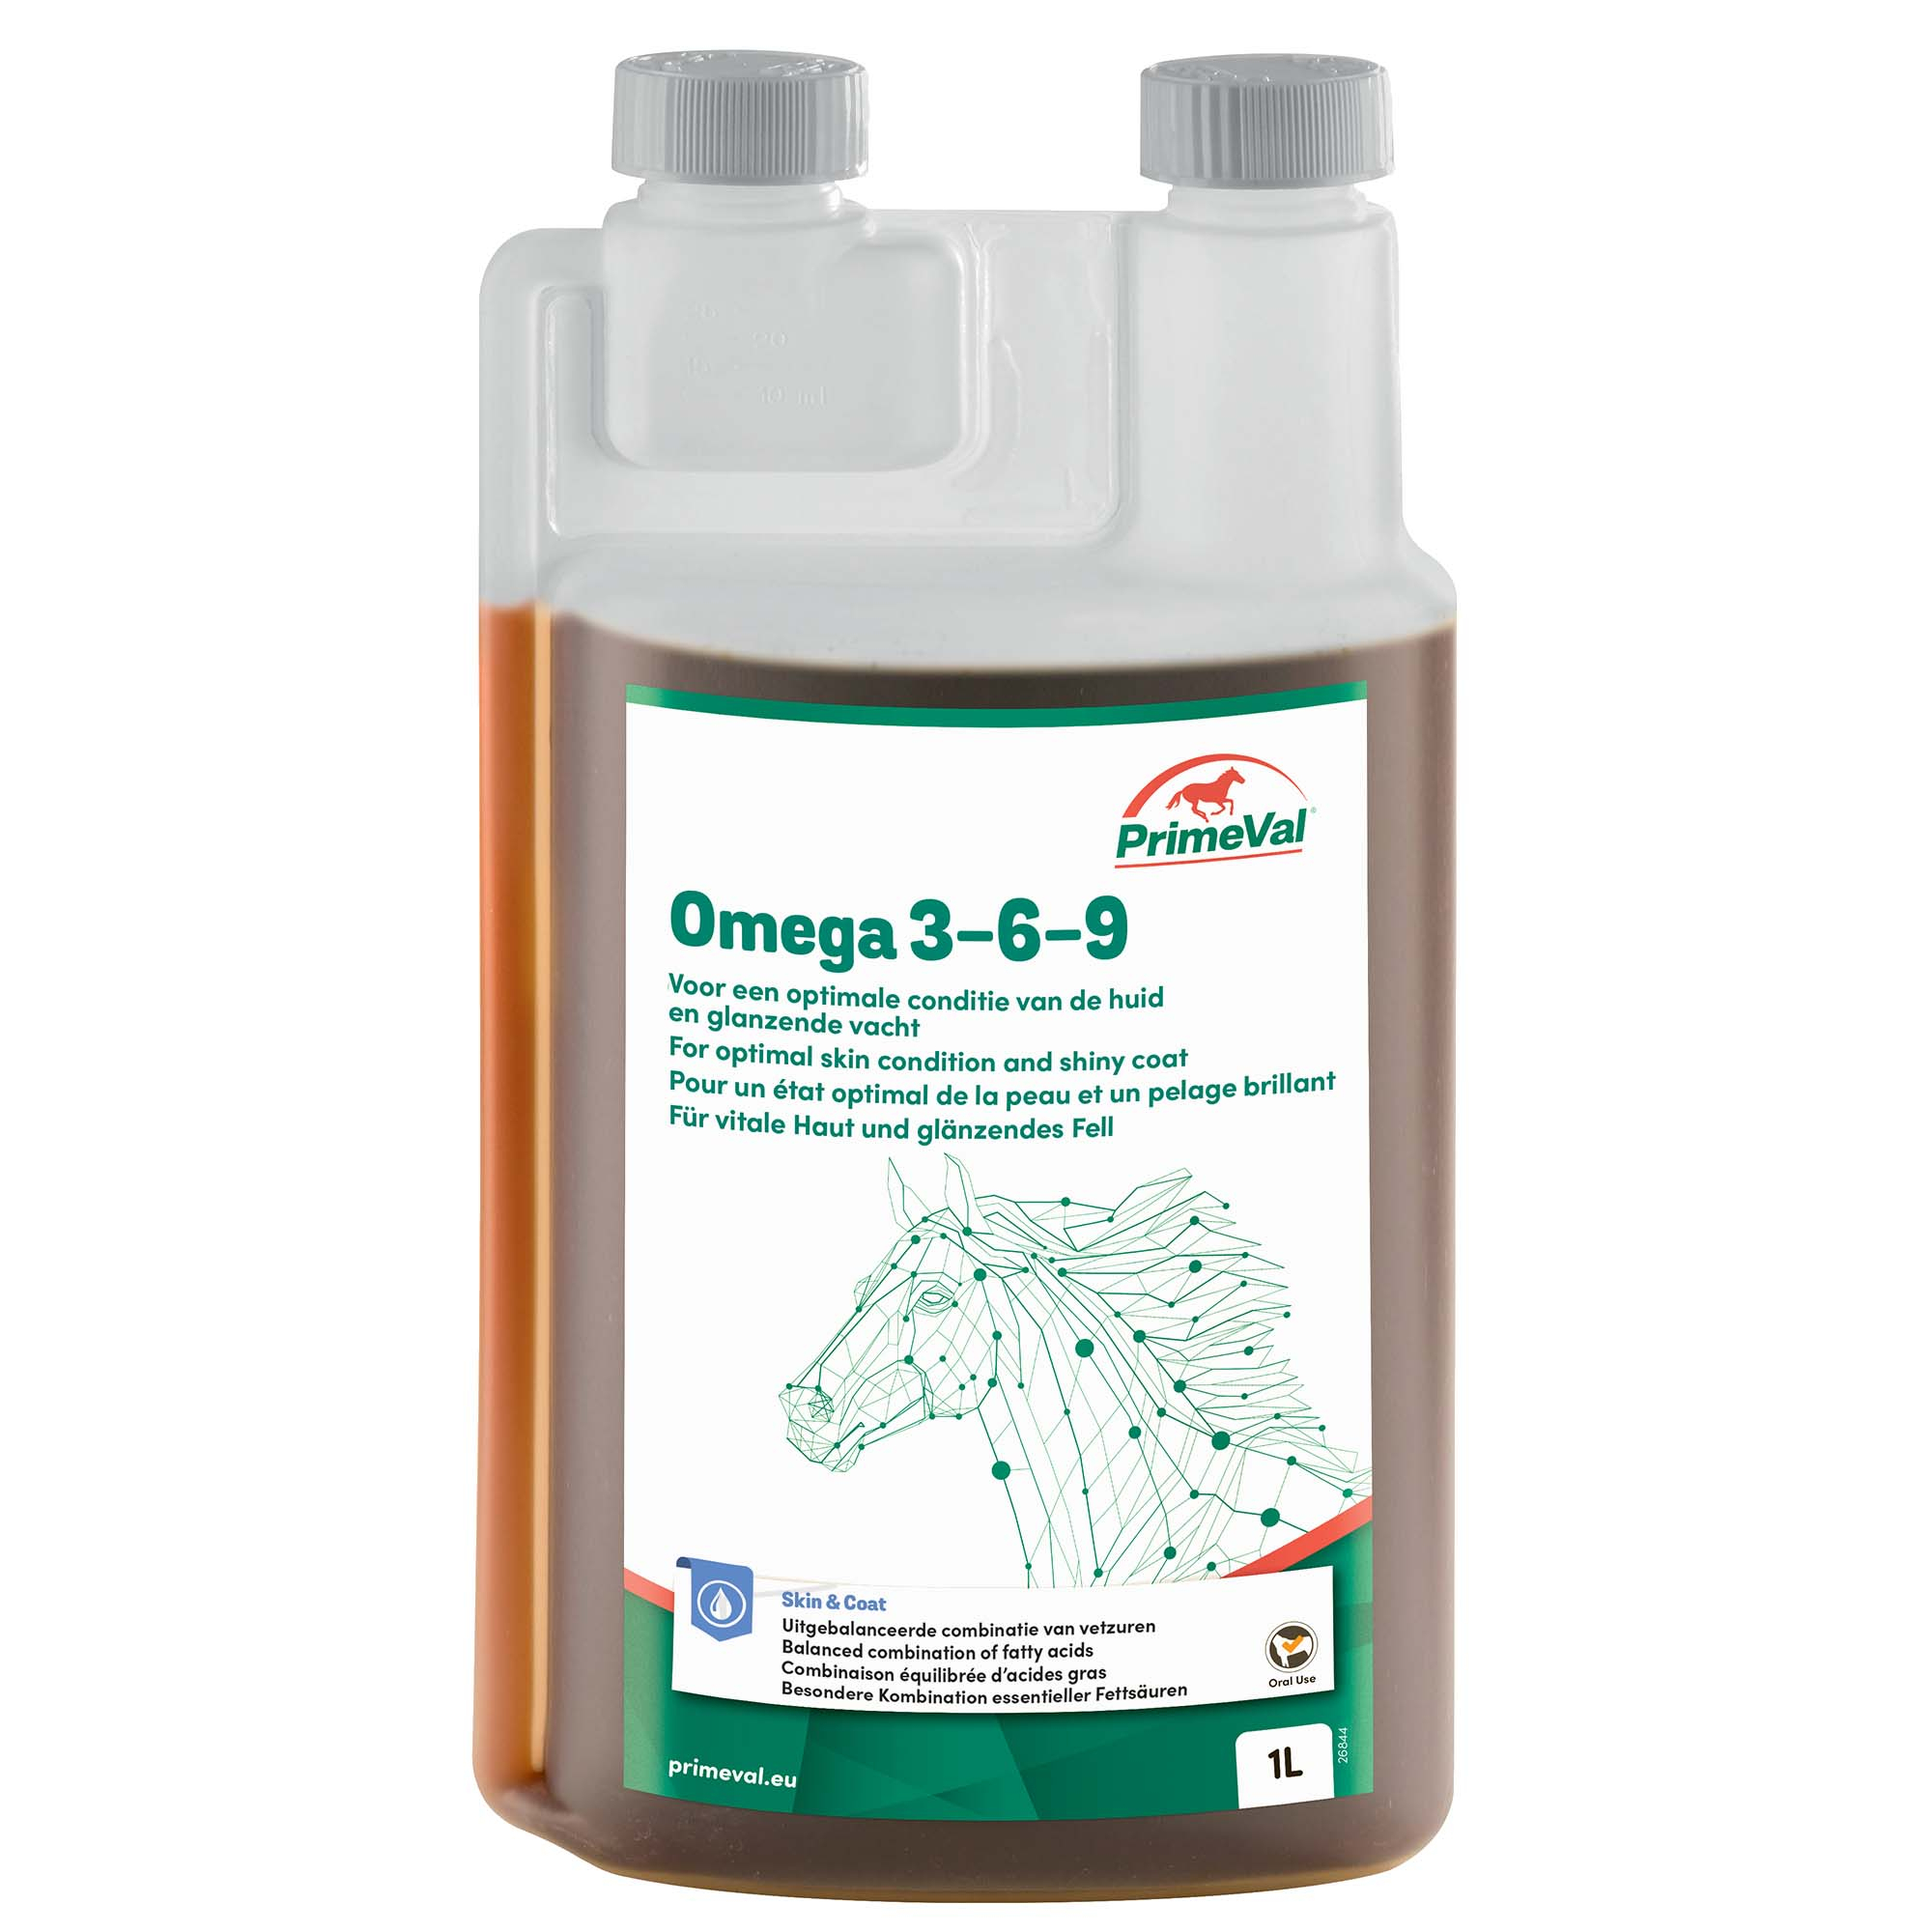 PrimeVal Omega 3-6-9 voedingssupplement voor paarden